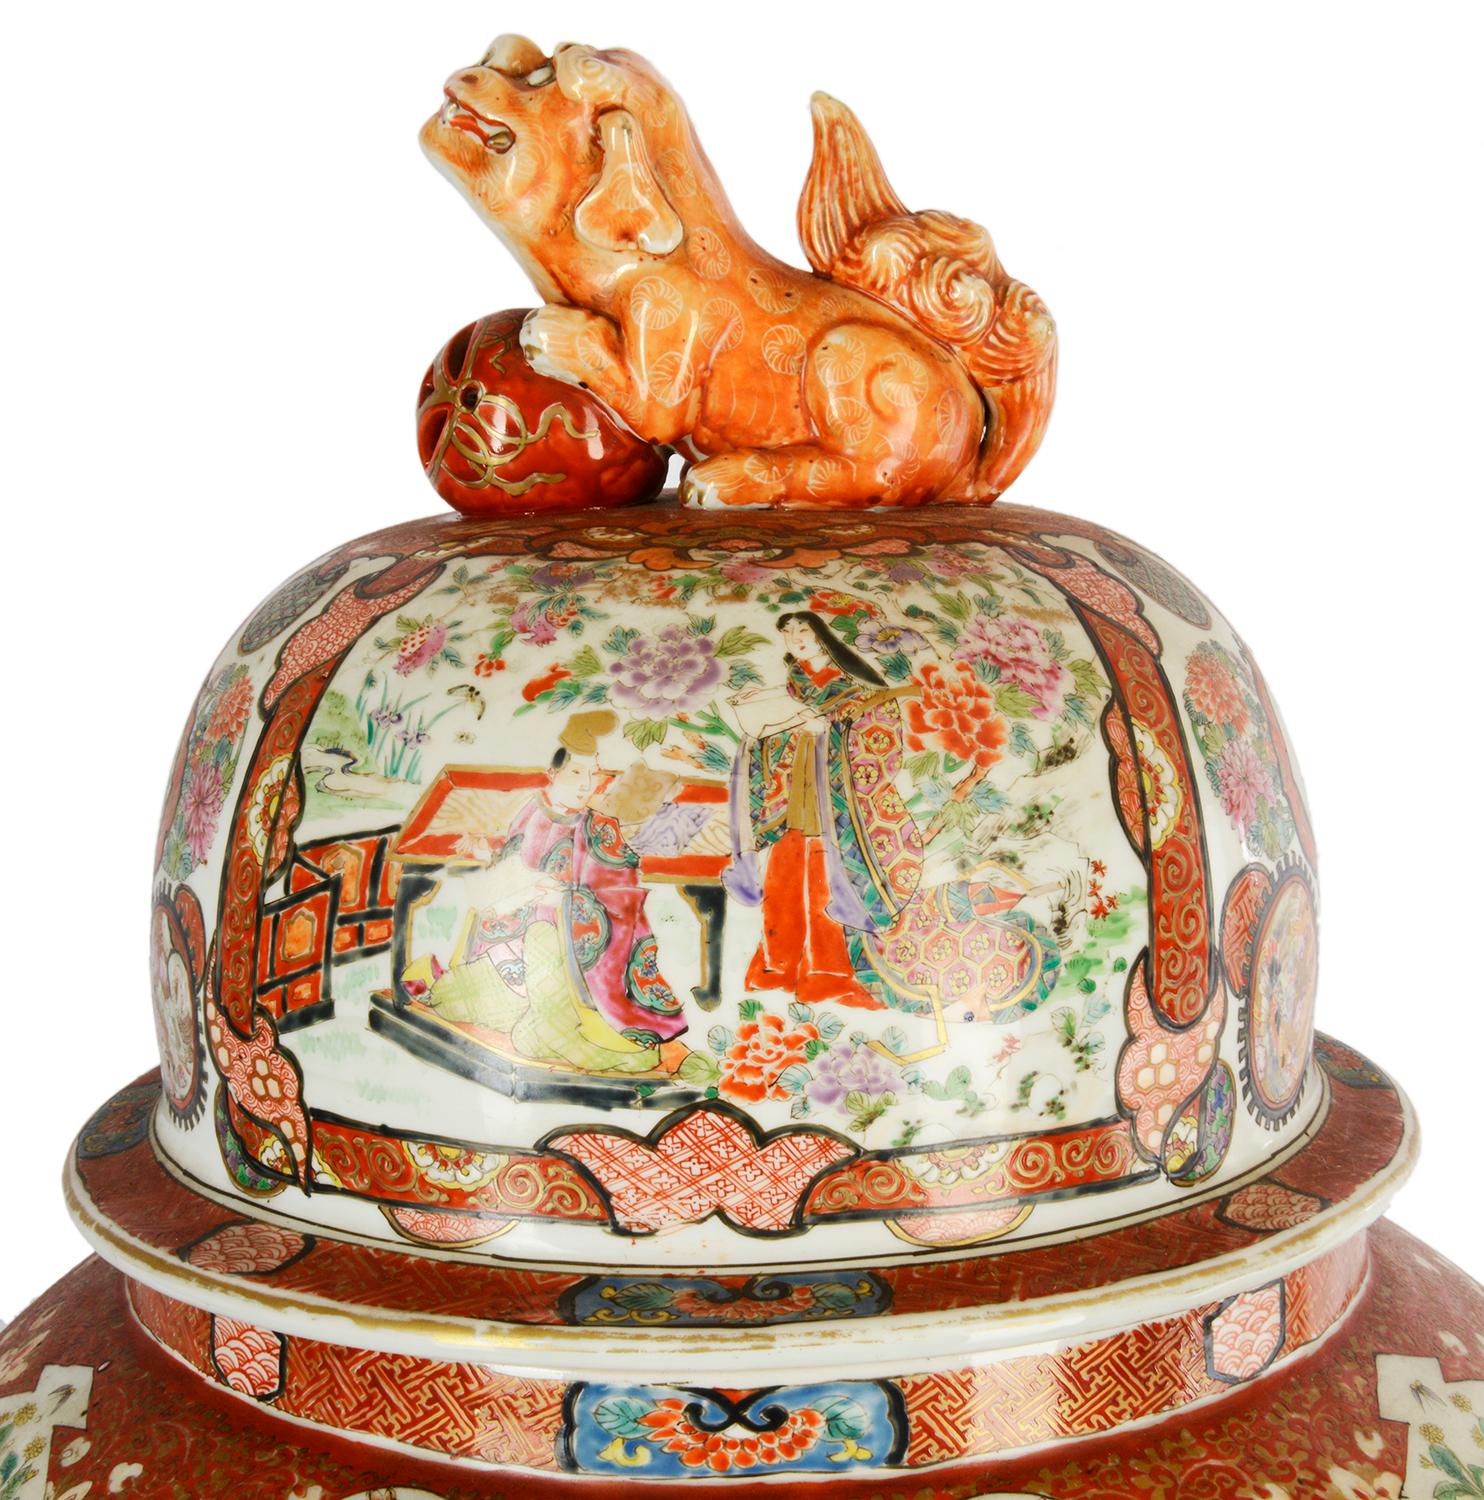 Un très impressionnant grand vase japonais à couvercle Kutani de la fin du 19e siècle. Ayant un chien de faux classique avec un fleuron en forme de boule, des scènes peintes de savants assis avec des parchemins, entourés d'assistants. Le fond orange